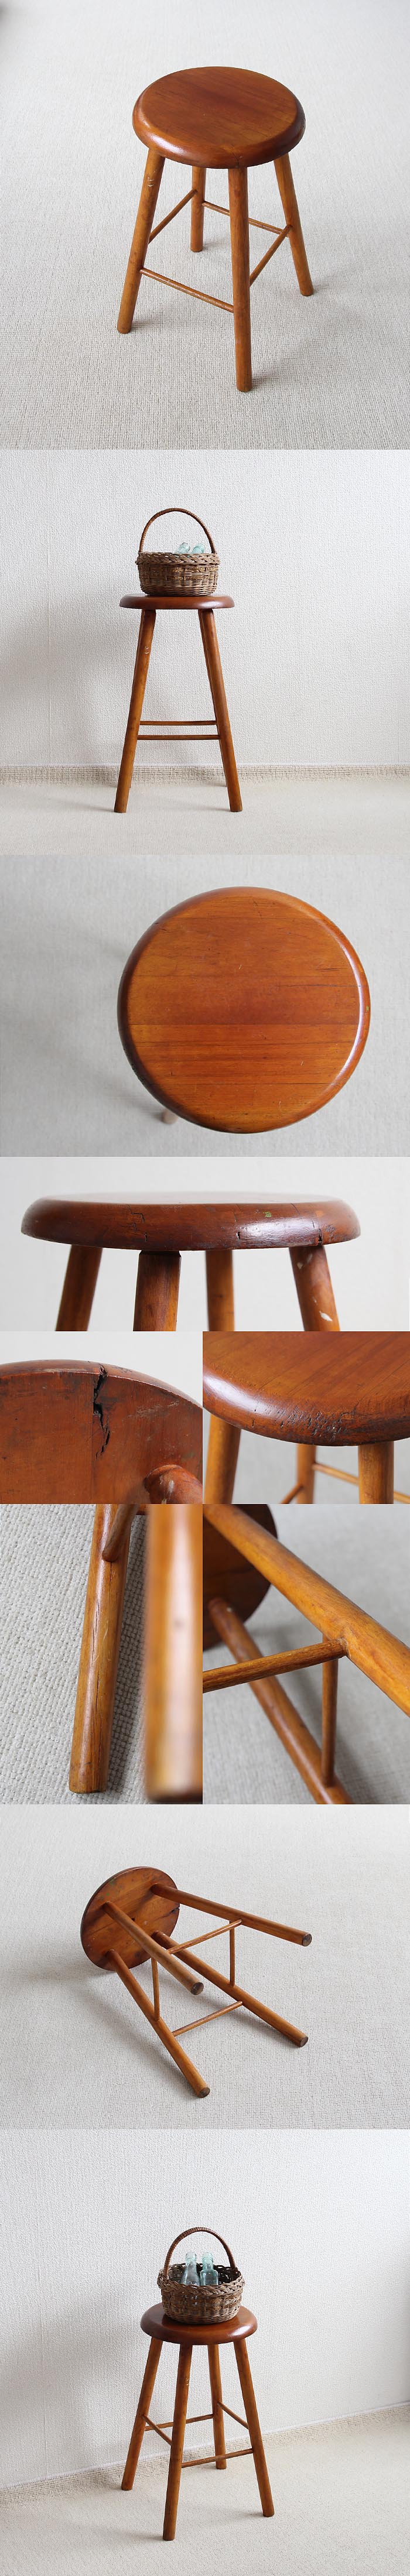 イギリス アンティーク 丸スツール 木製椅子 カントリー インテリア 